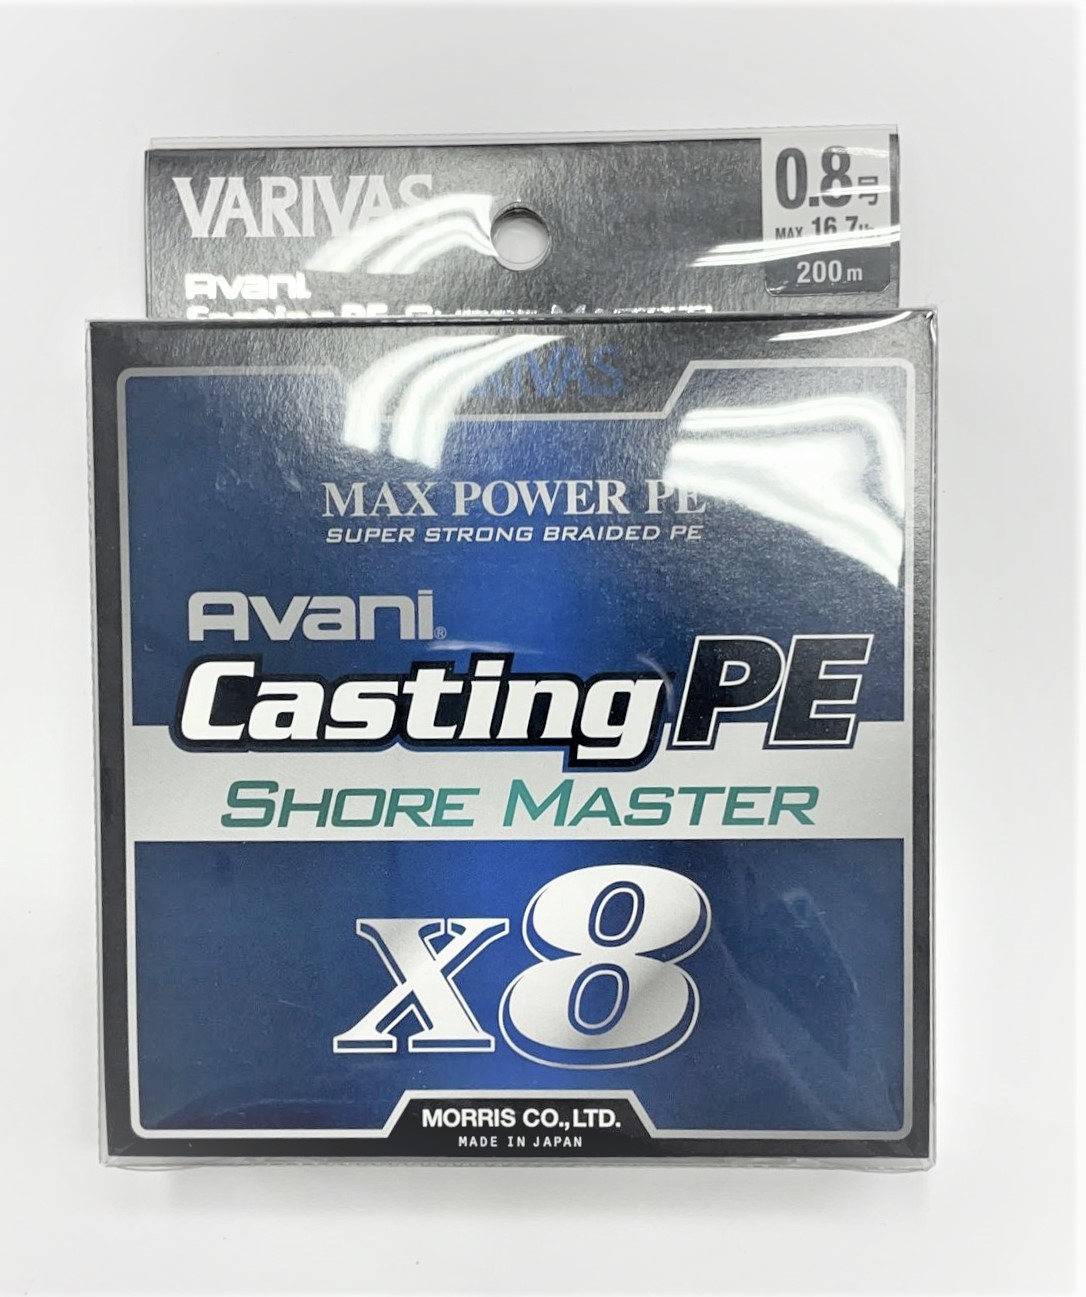 Varivas Avani Max Power PE X8 Shore Master Braided Casting Fishing Line